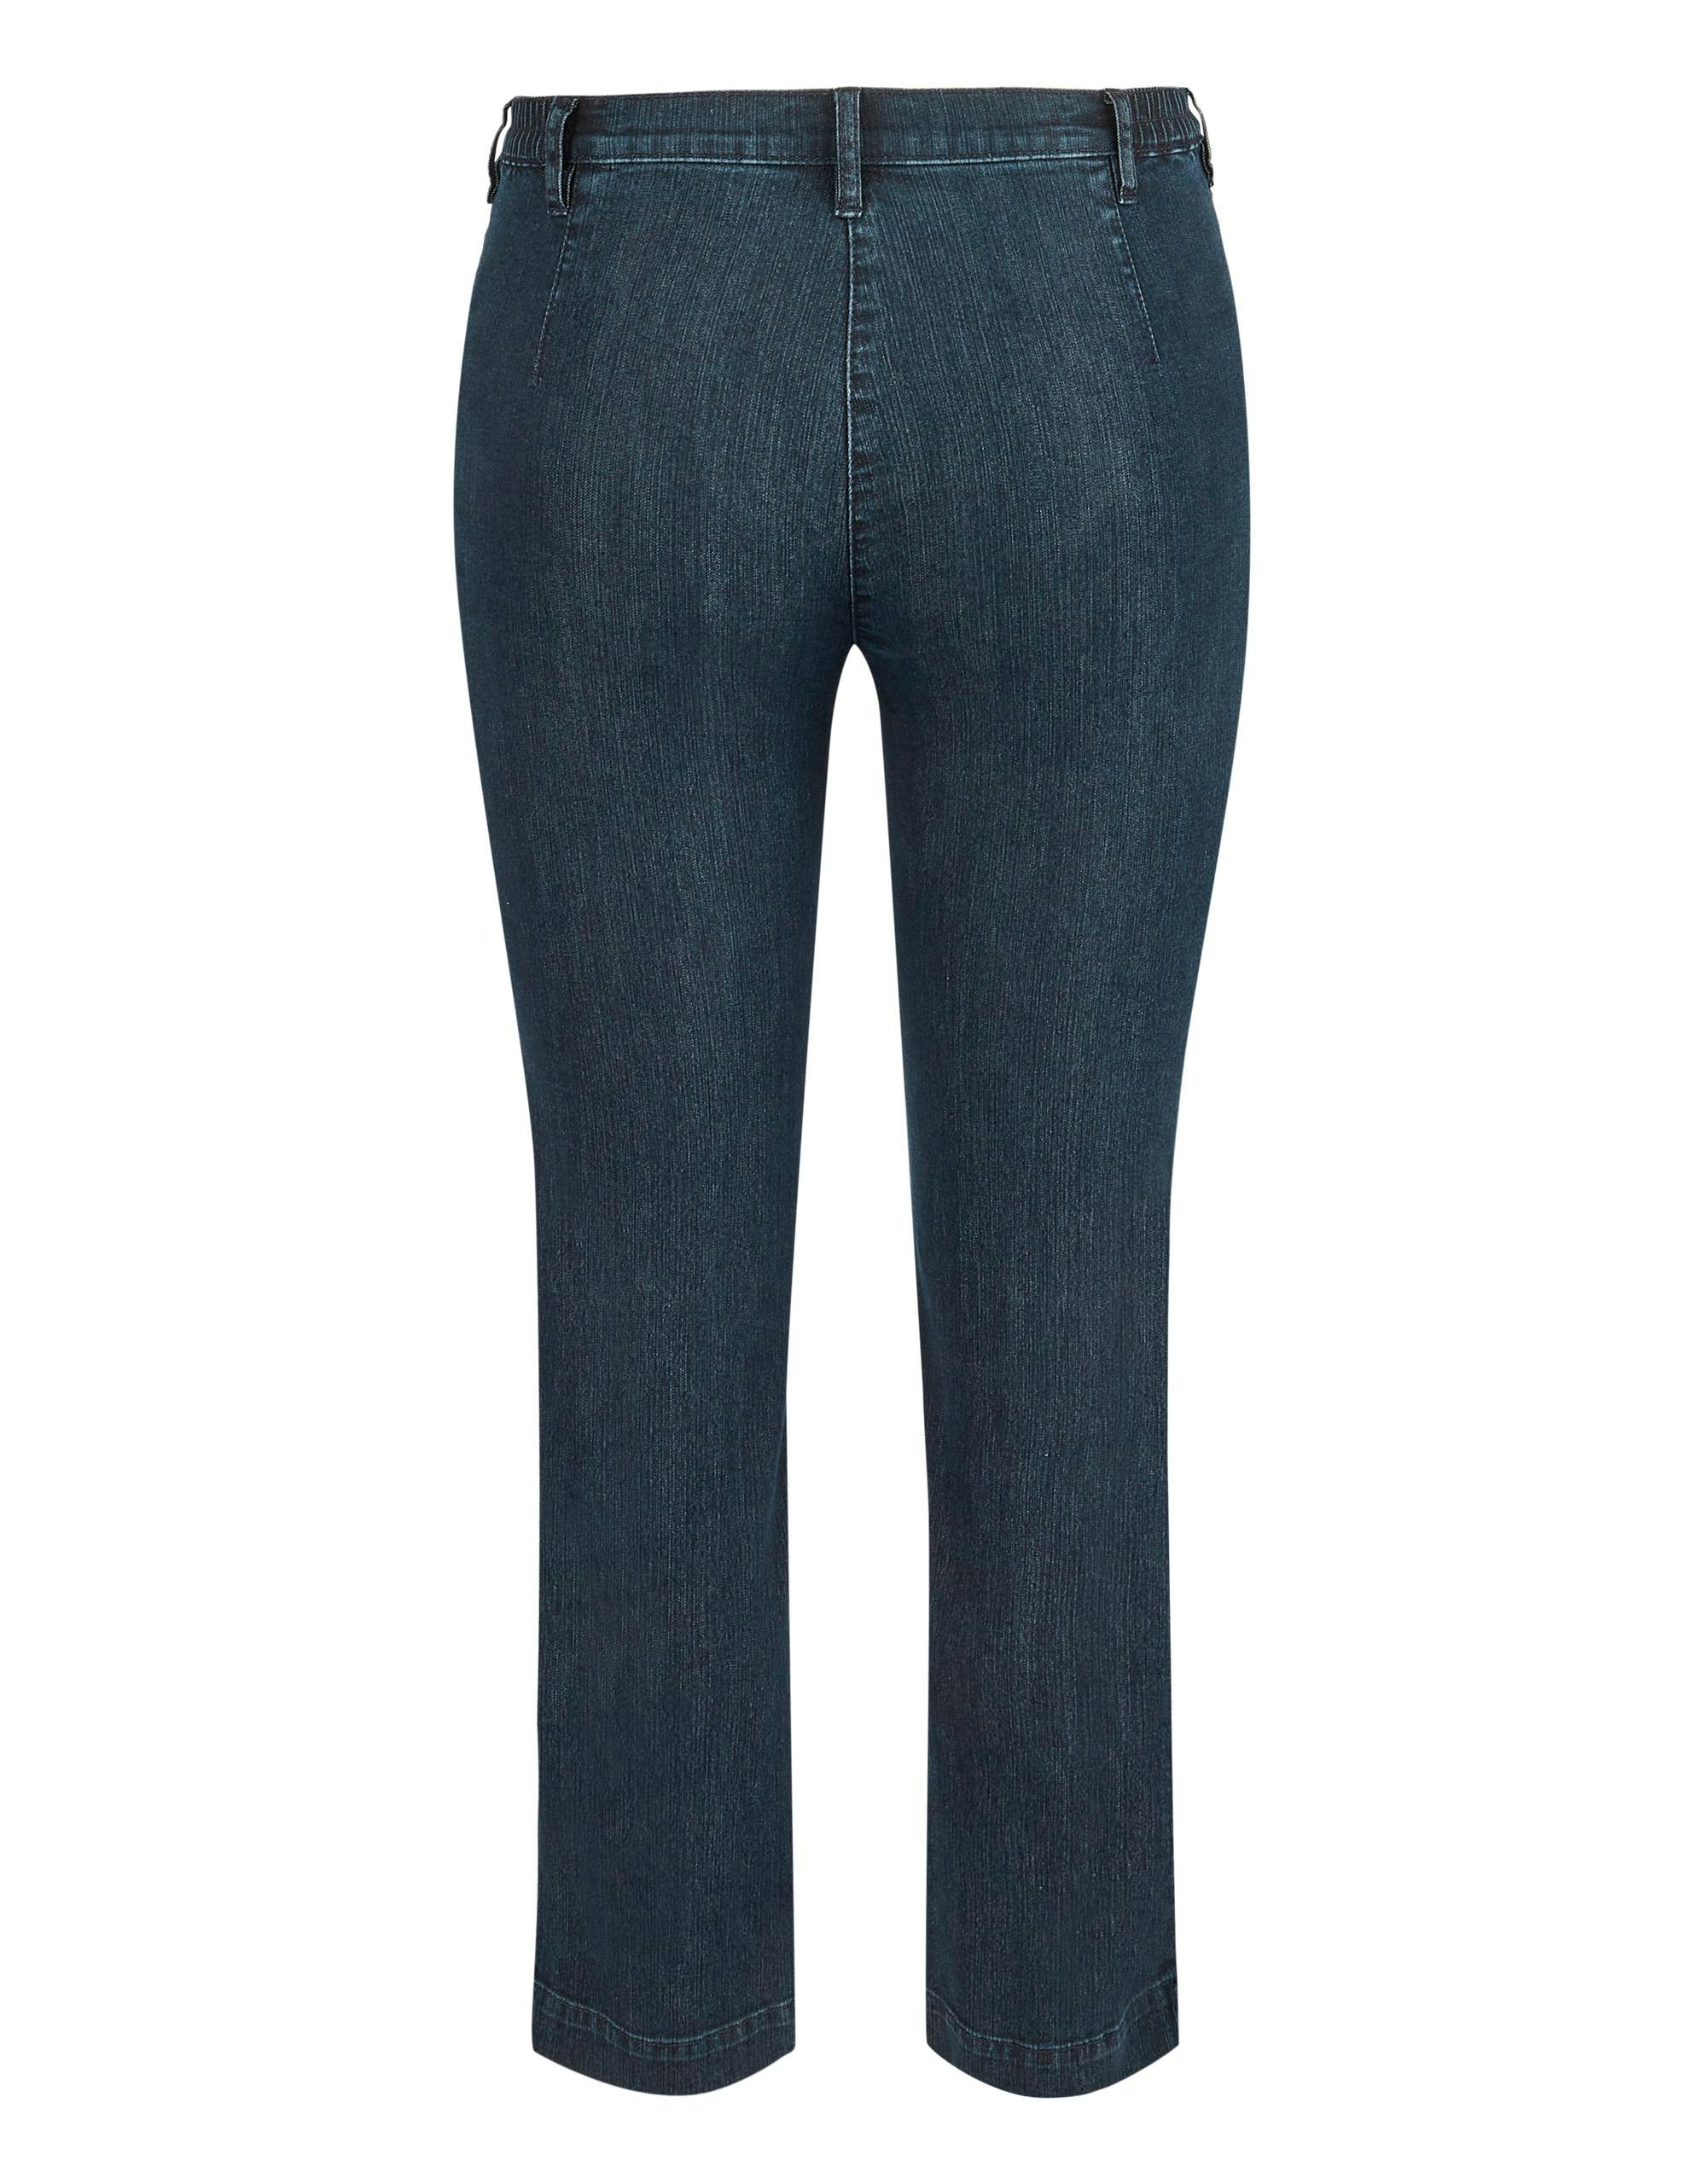 Damen Bekleidung Hosen Jeans BRAX Damen Jeans Gr DE 40 